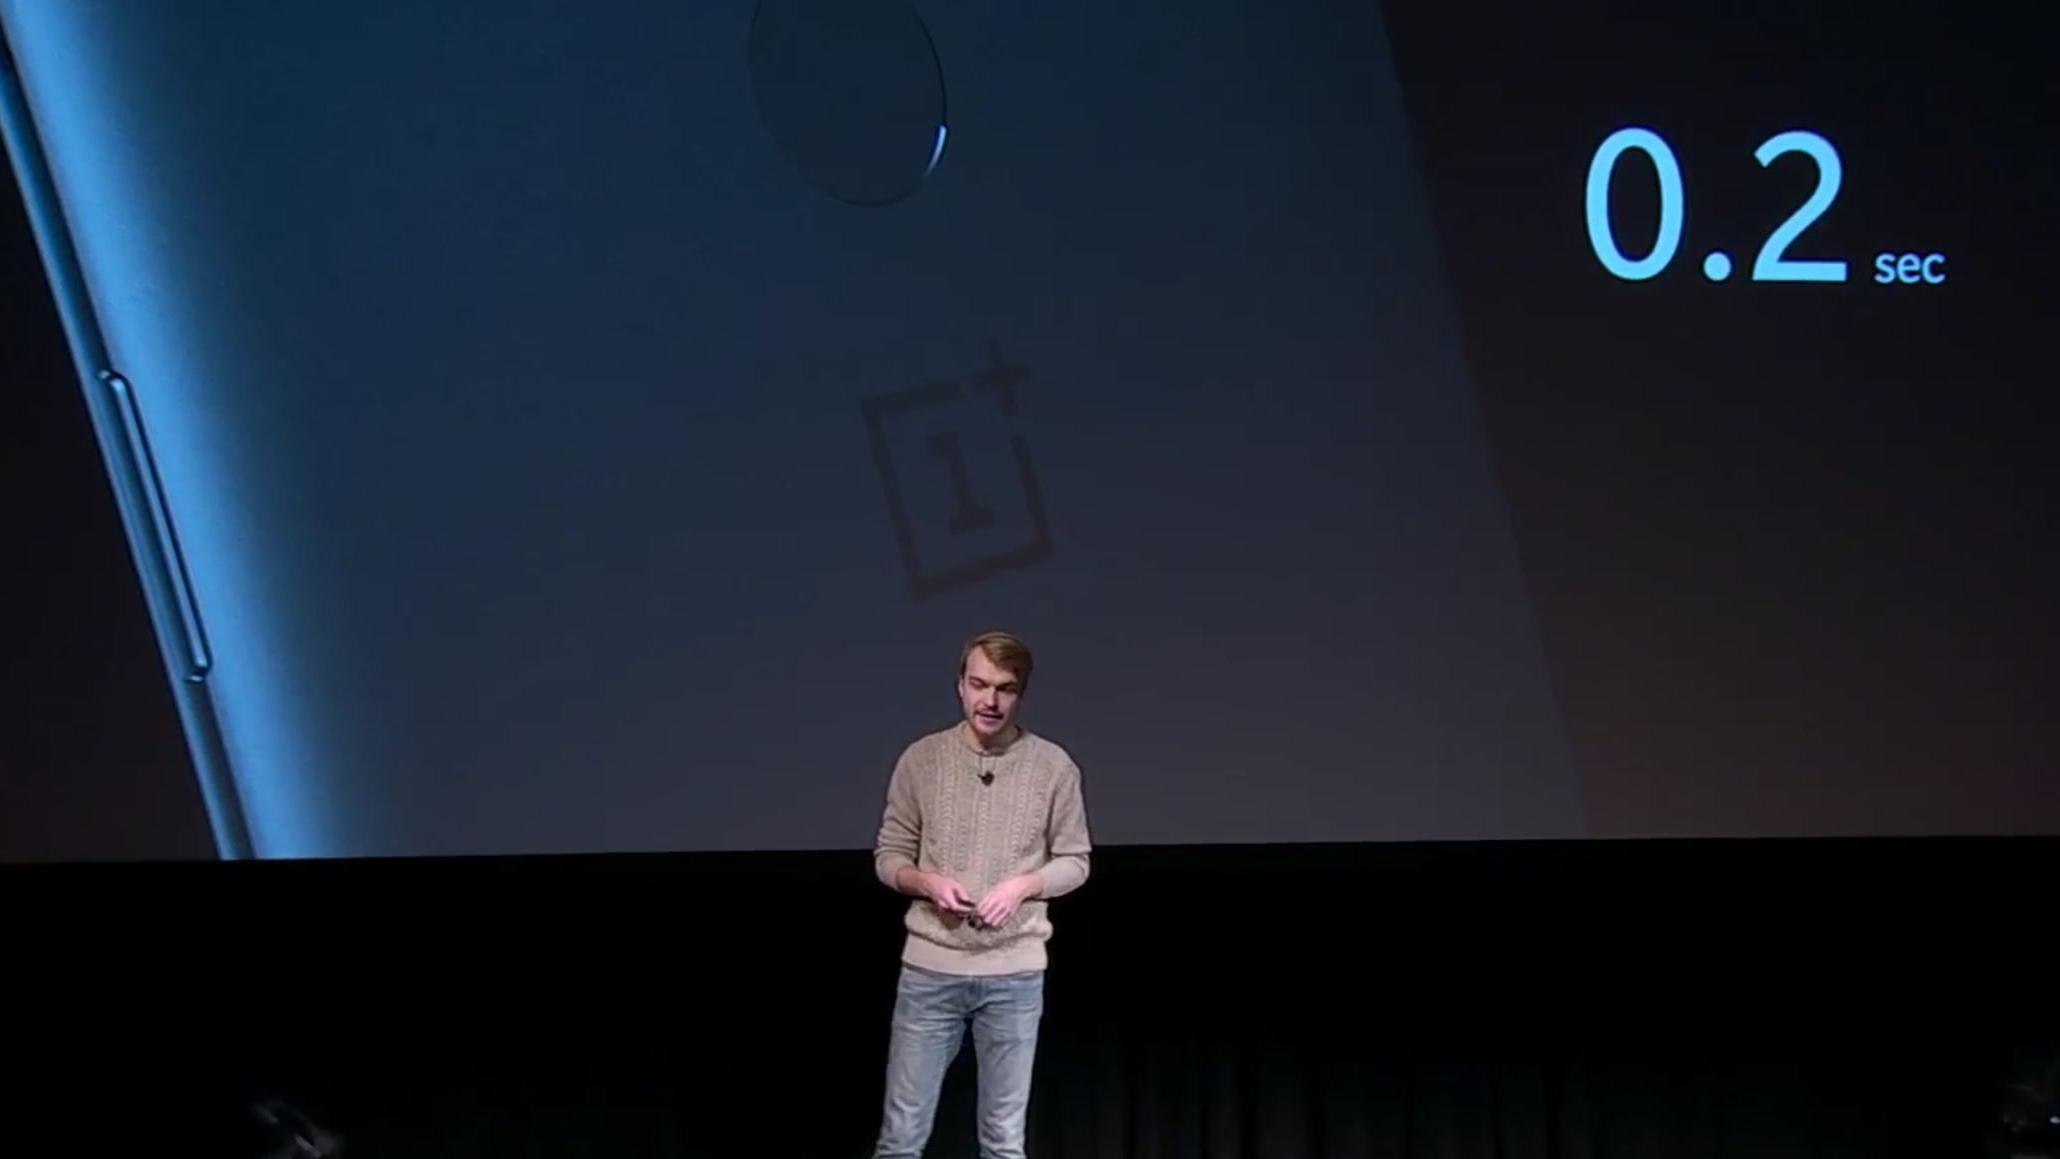 OnePlus 5T har fingerleser på baksiden, og en ansiktslås via frontkameraet. Sistnevnte er ikke god nok til å gi full sikkerhet, så den kan åpne låseskjermen, men ikke ta seg av betalinger og annen sensitiv informasjon. Bilde: Skjermdump, OnePlus